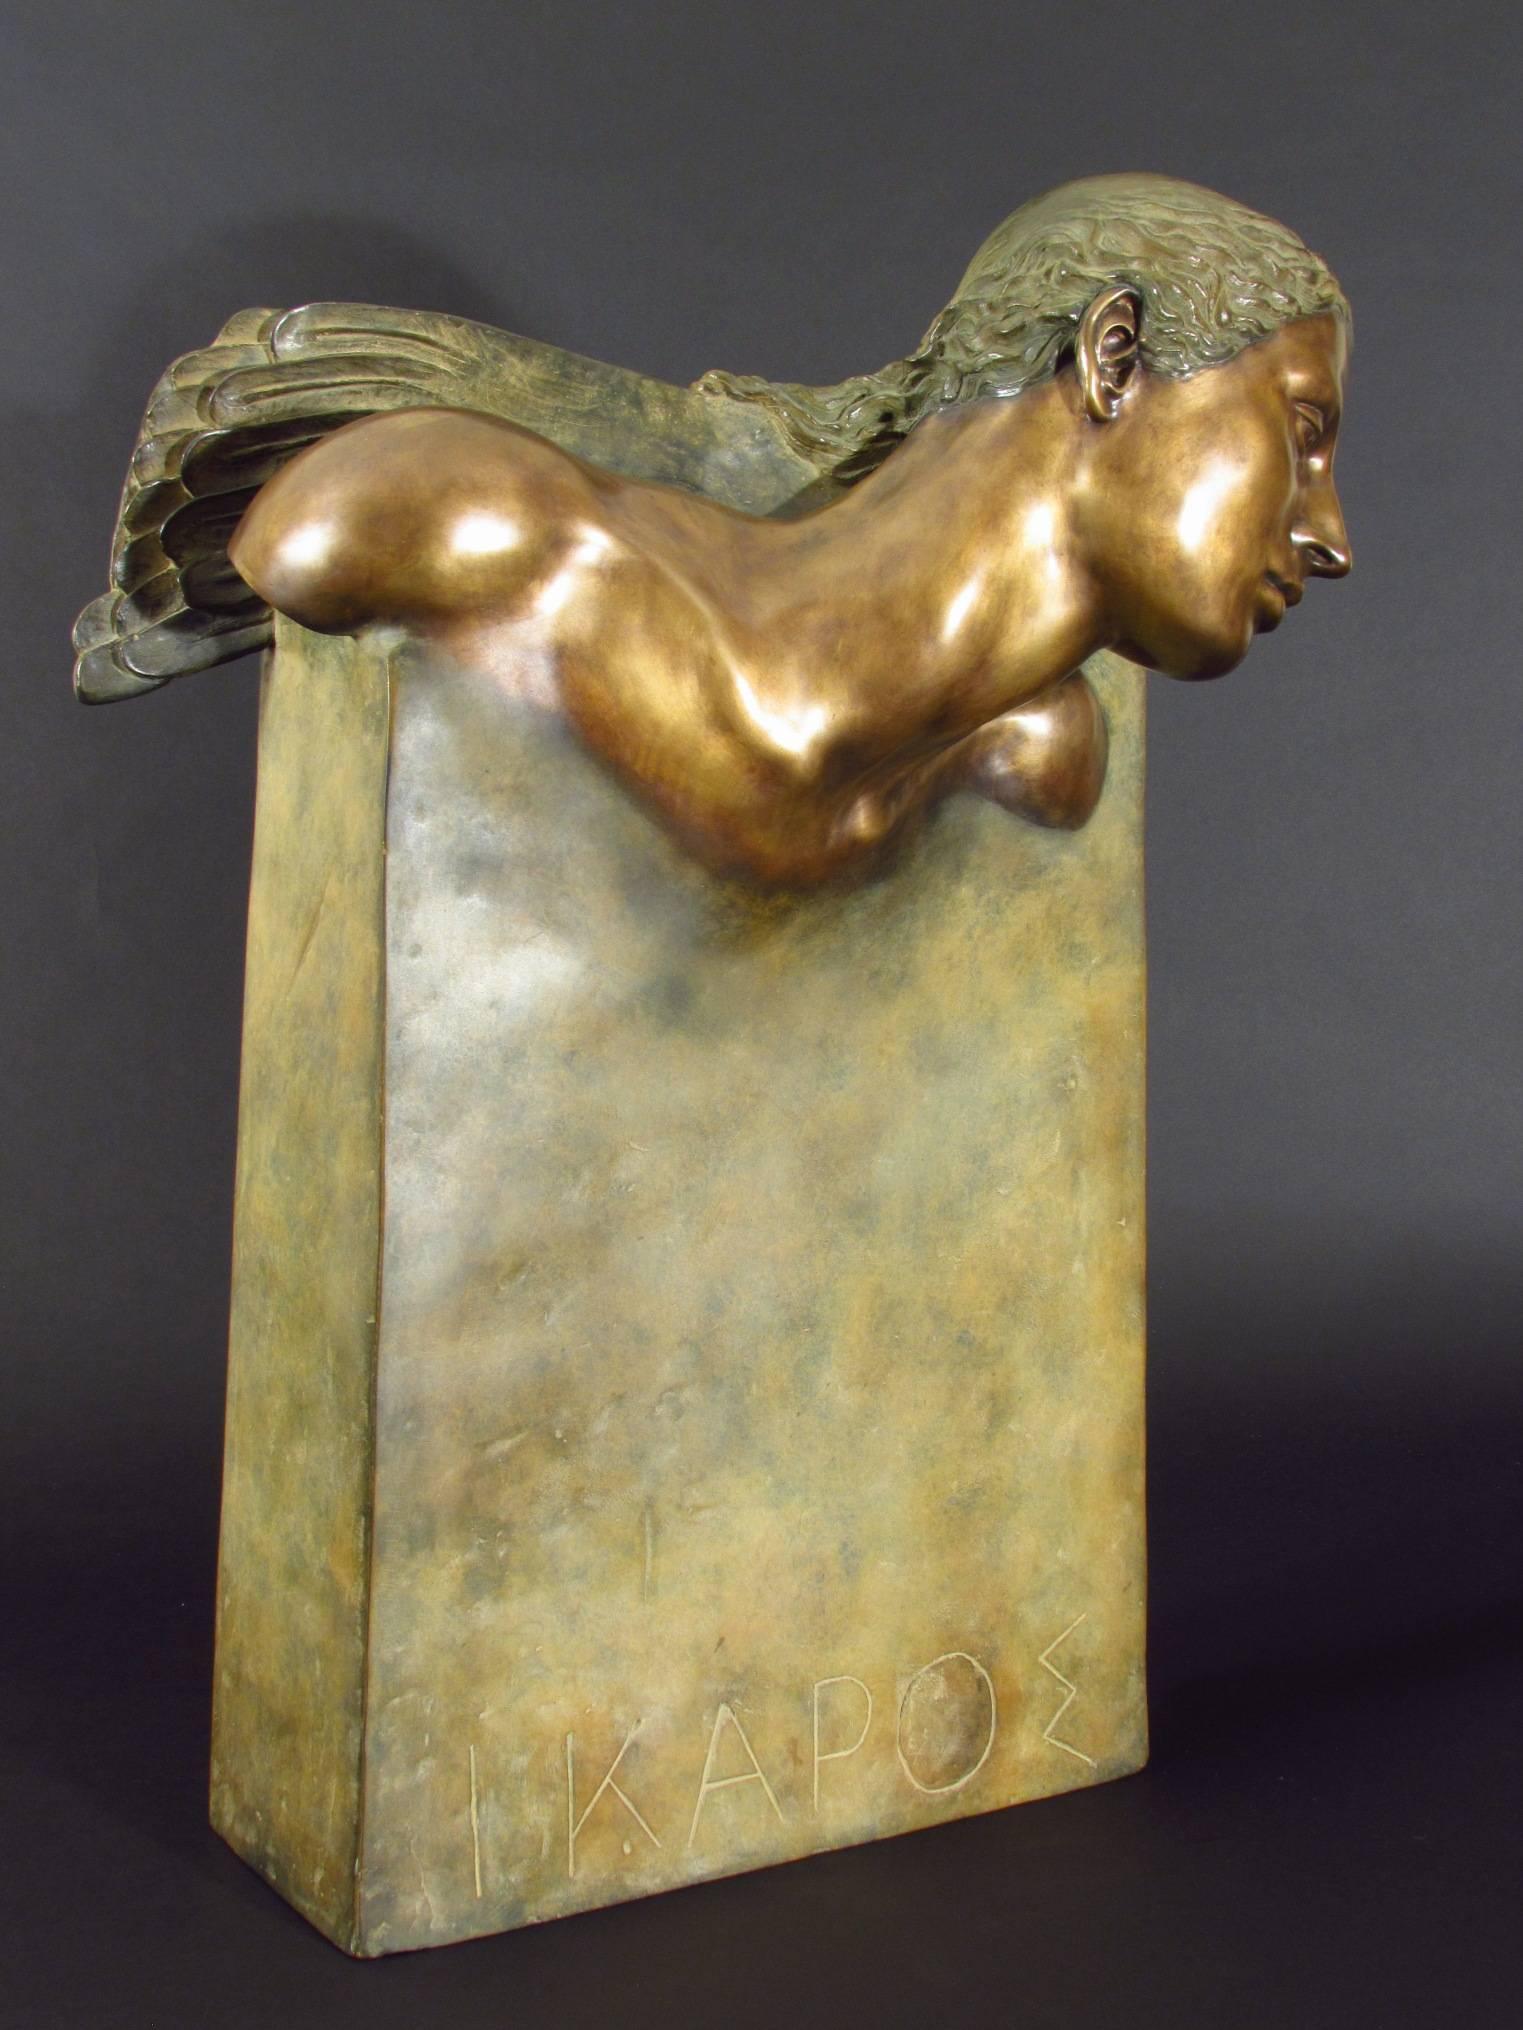 Ikarus - Sculpture by Margot Homan